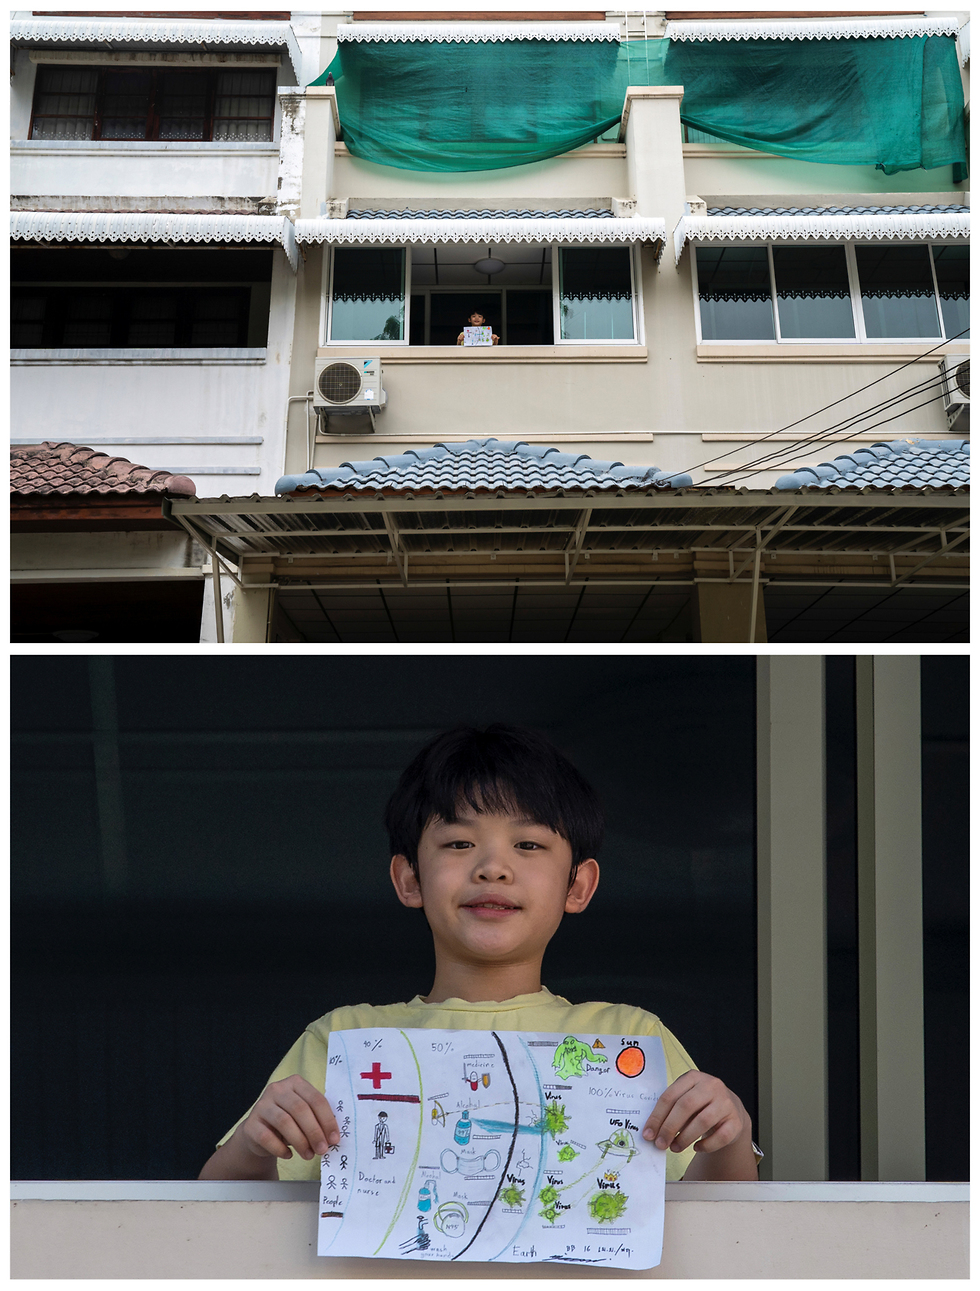 מרפסת מרפסות ילדים מרחבי העולם מציירים נגיף קורונה (צילום: רויטרס)